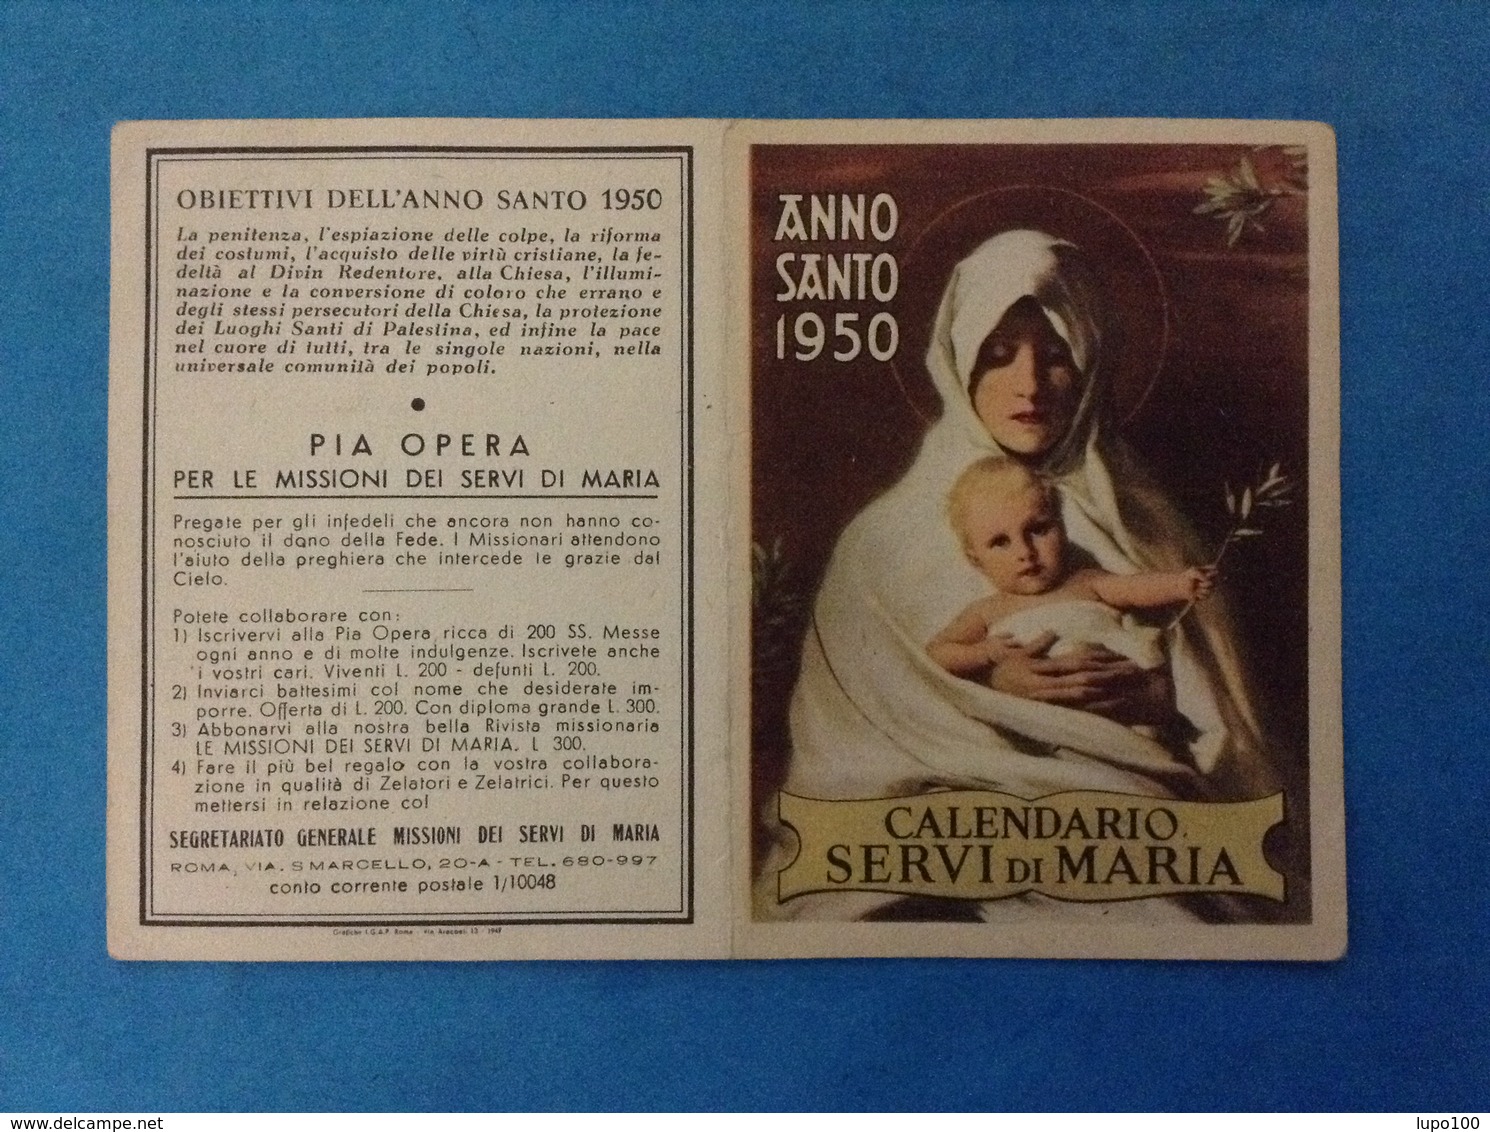 SANTINO CALENDARIETTO HOLY CARD - CALENDARIO SERVI DI MARIA ANNO SANTO 1950 - Petit Format : 1961-70